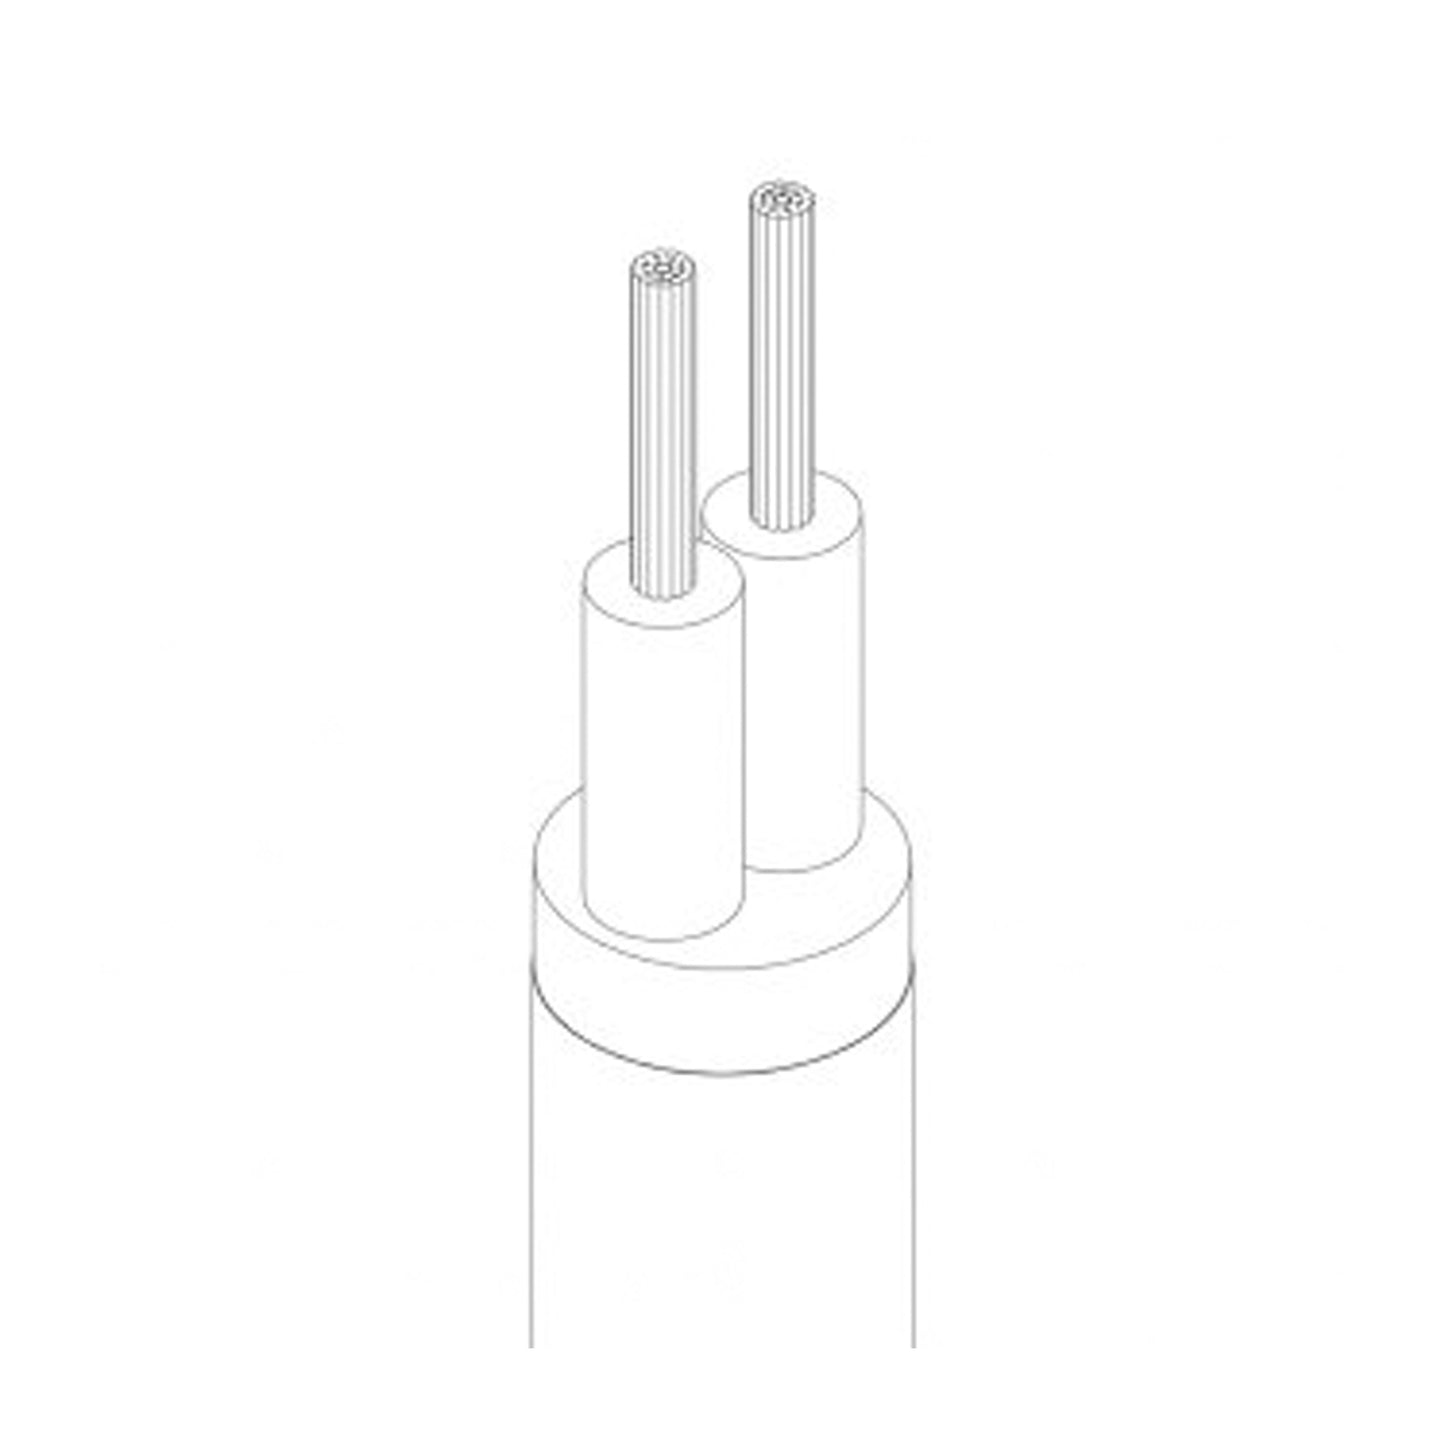 Dunkelblaues 2 adriges Elektro Rundkabel mit Stoffüberzug, ideal für Leuchten, Blitze und Lampen~2658